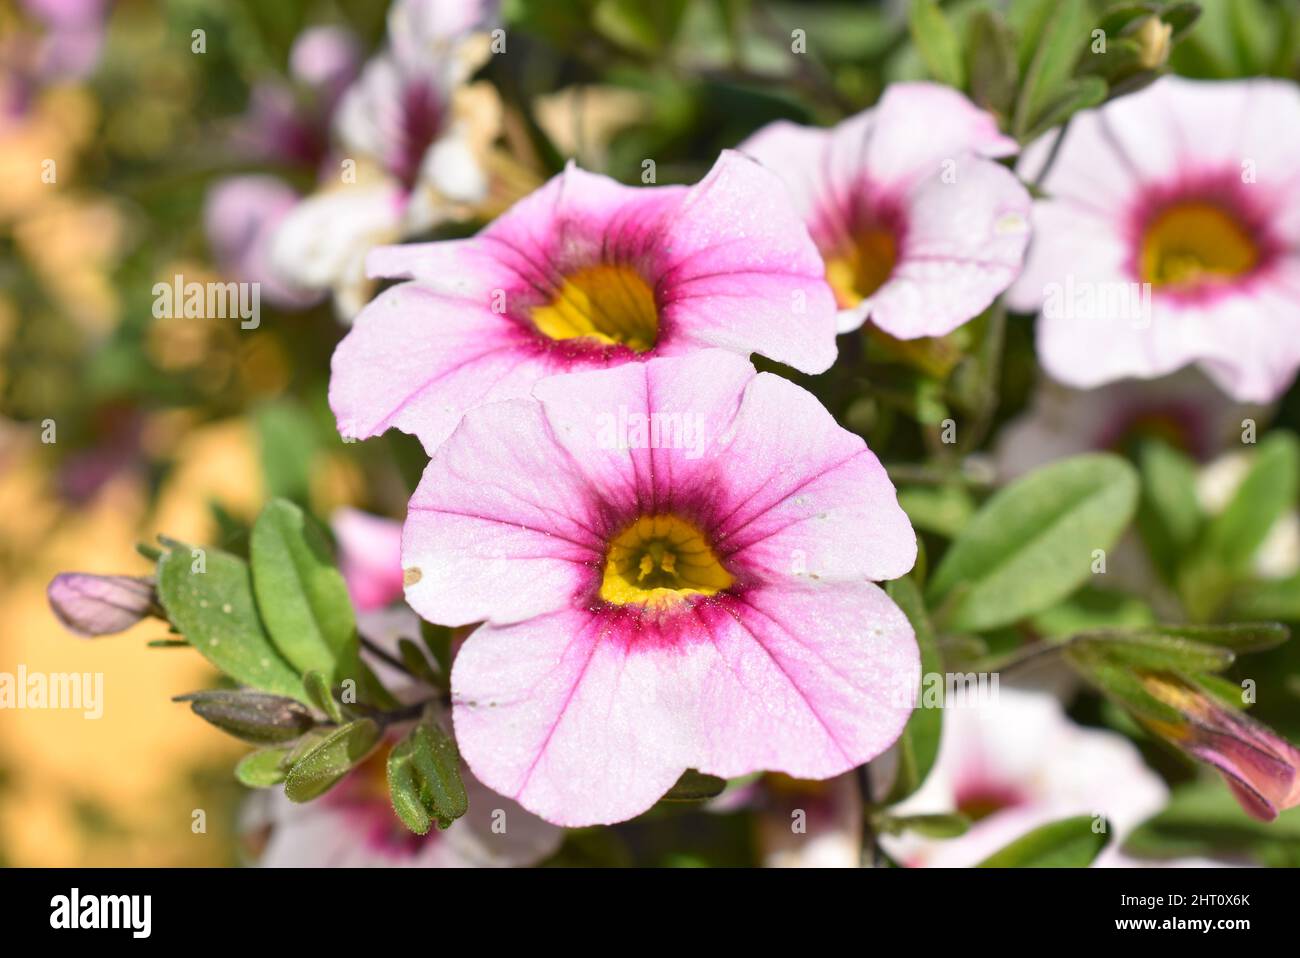 Gros plan sur les fleurs pétunia à rayures roses et blanches Banque D'Images